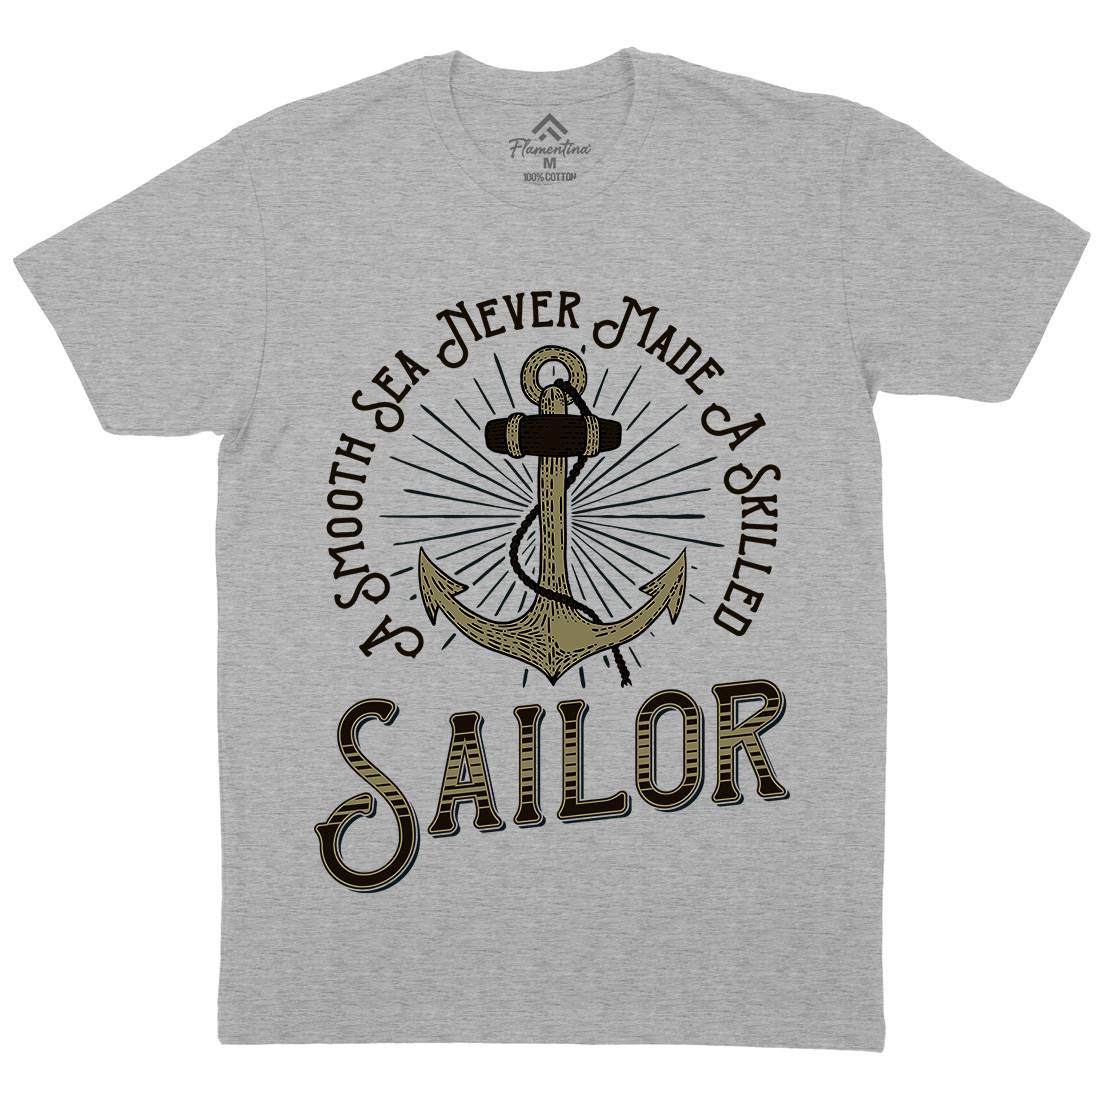 Sailor Anchor Mens Organic Crew Neck T-Shirt Navy D967